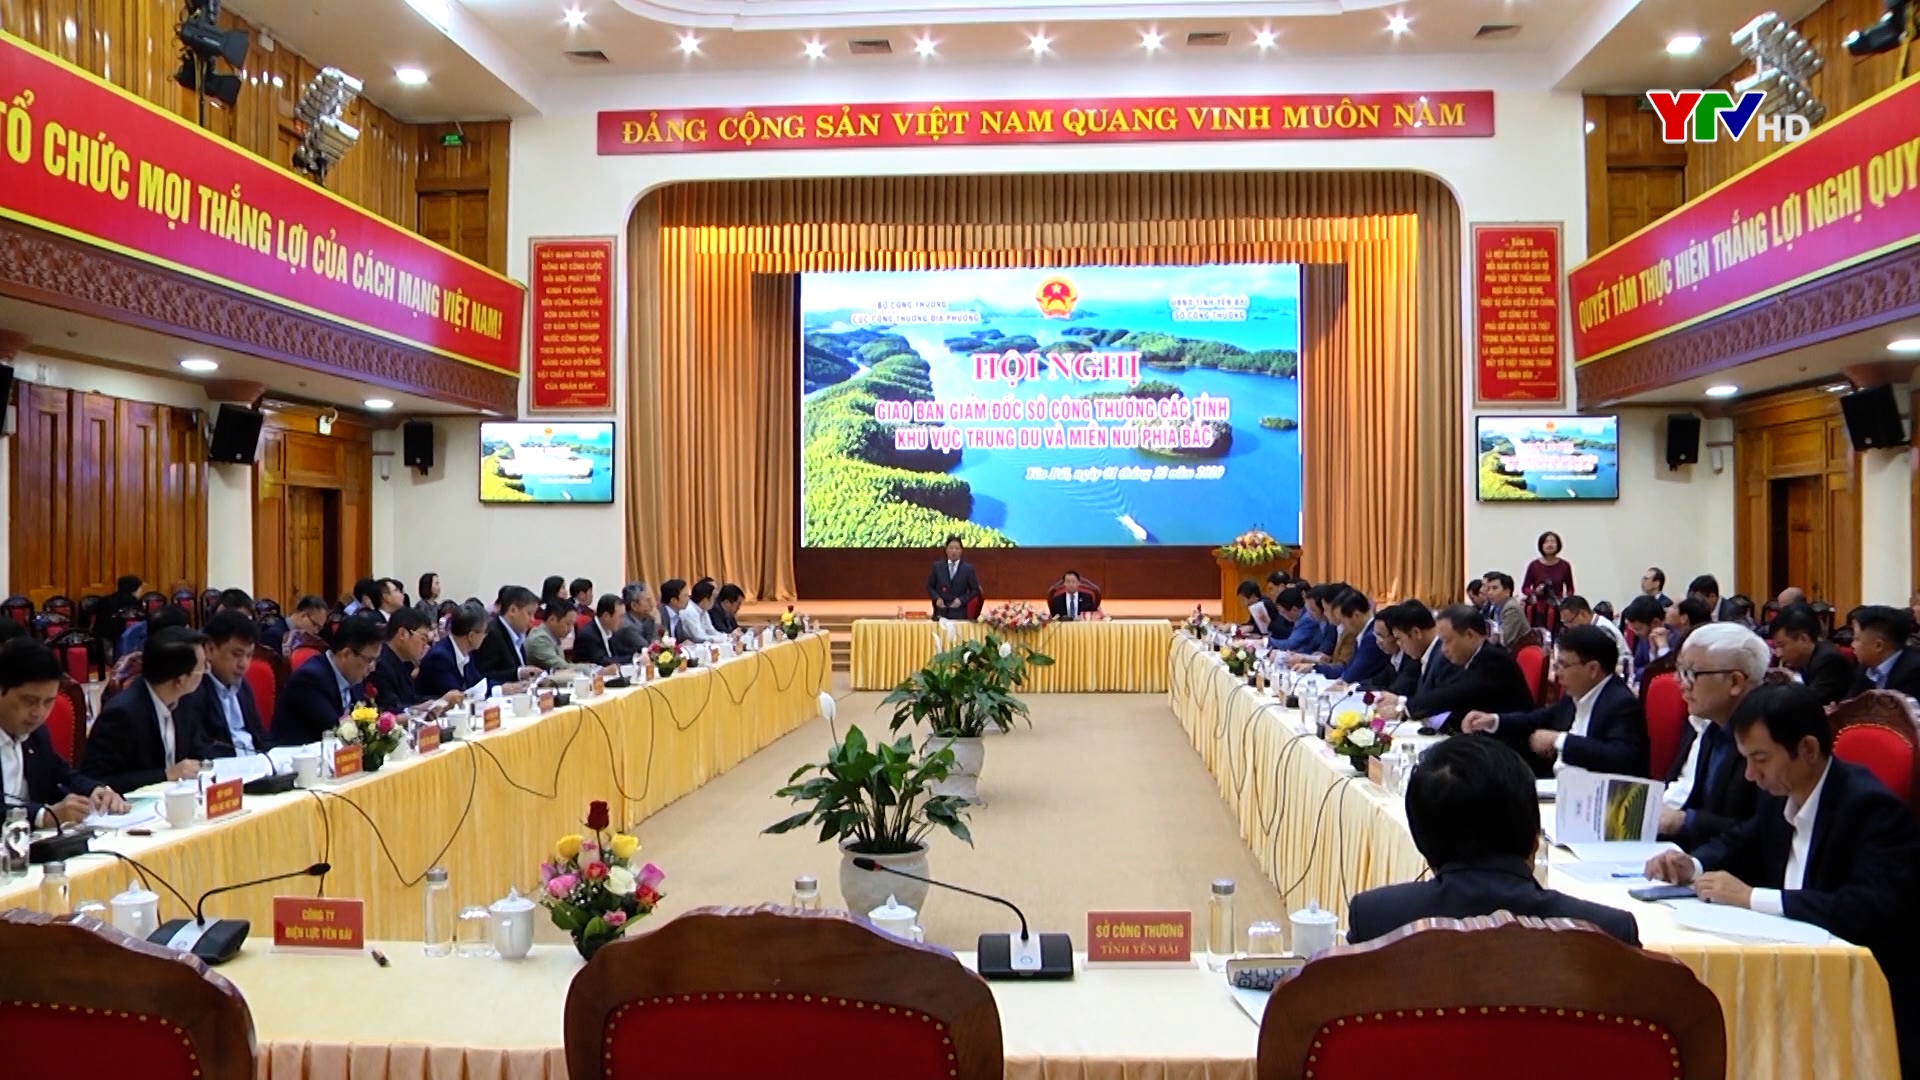 Hội nghị giao ban Giám đốc Sở Công thương các tỉnh khu vực Trung du và miền núi phía Bắc.